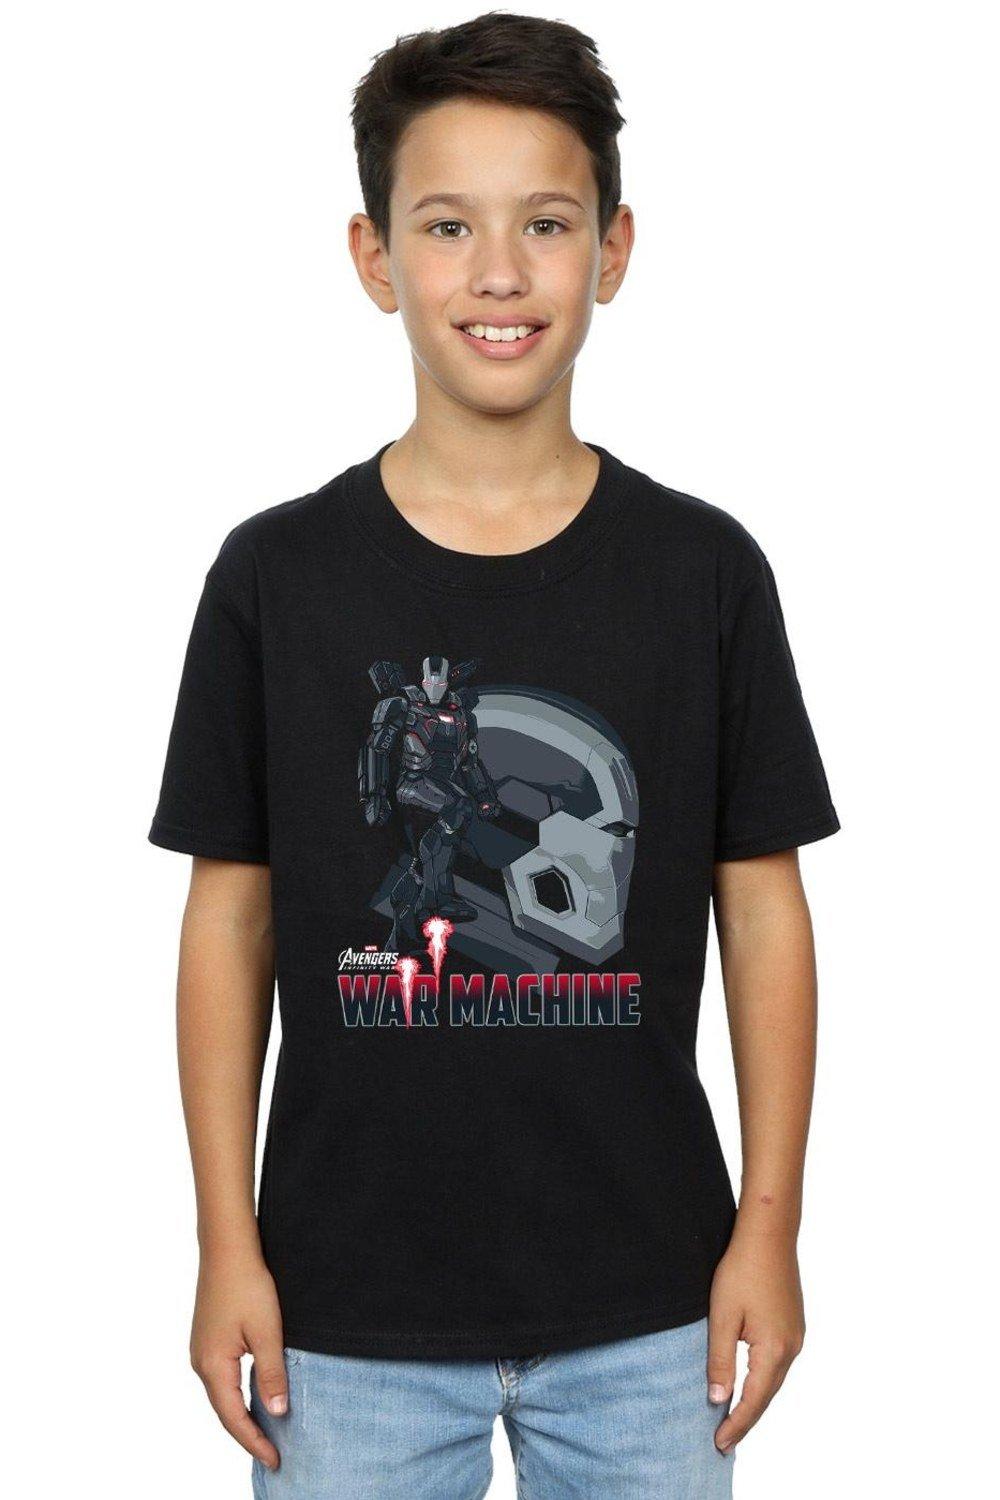 Avengers Infinity War War Machine Character T-Shirt